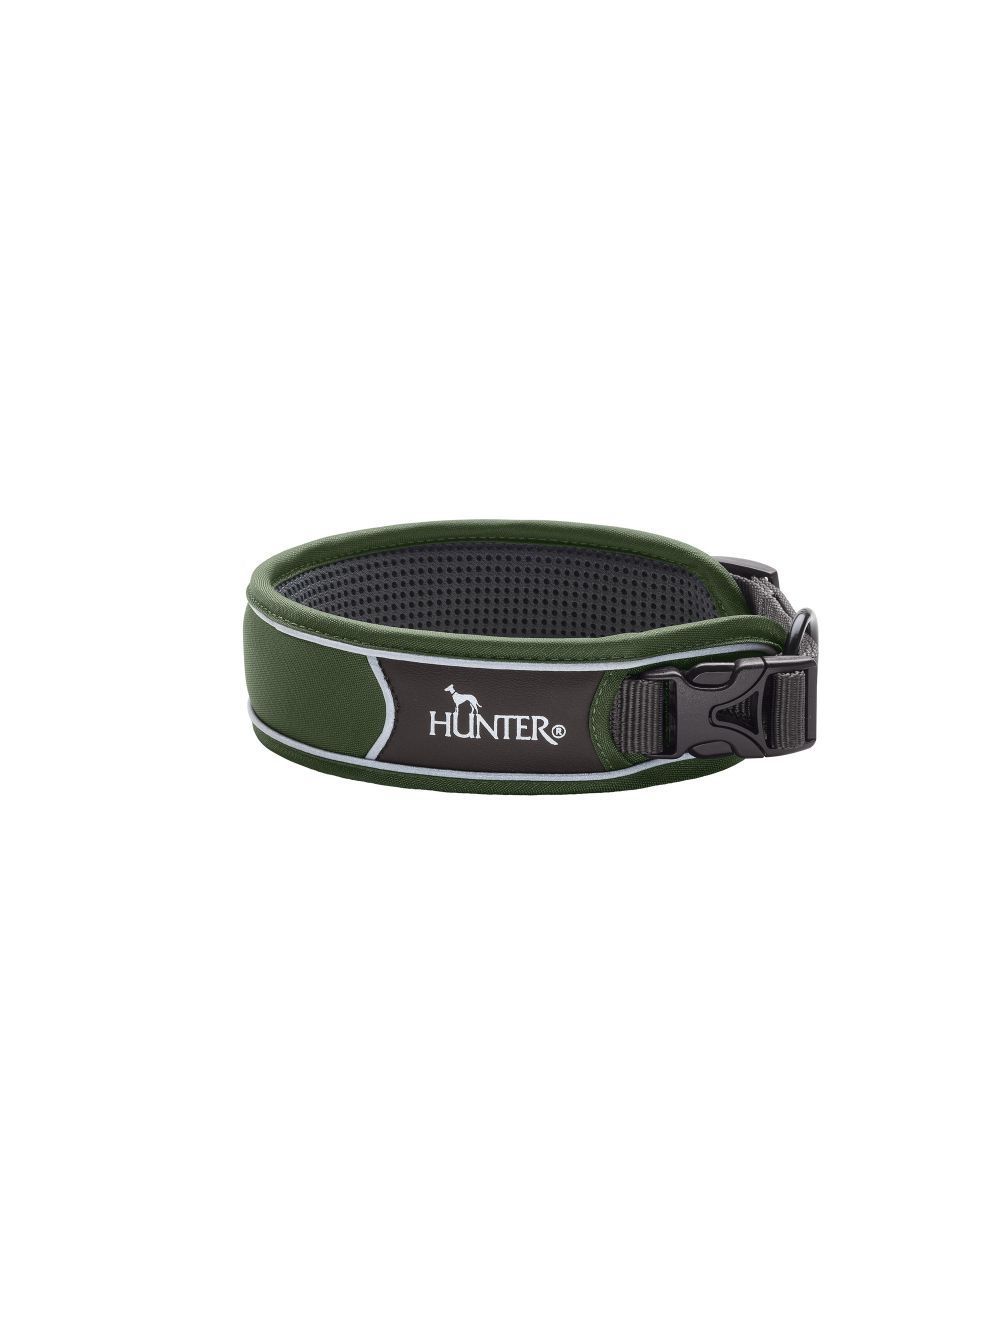 Hunter - Collar Divo S, green/grey - (67595) - Kjæledyr og utstyr